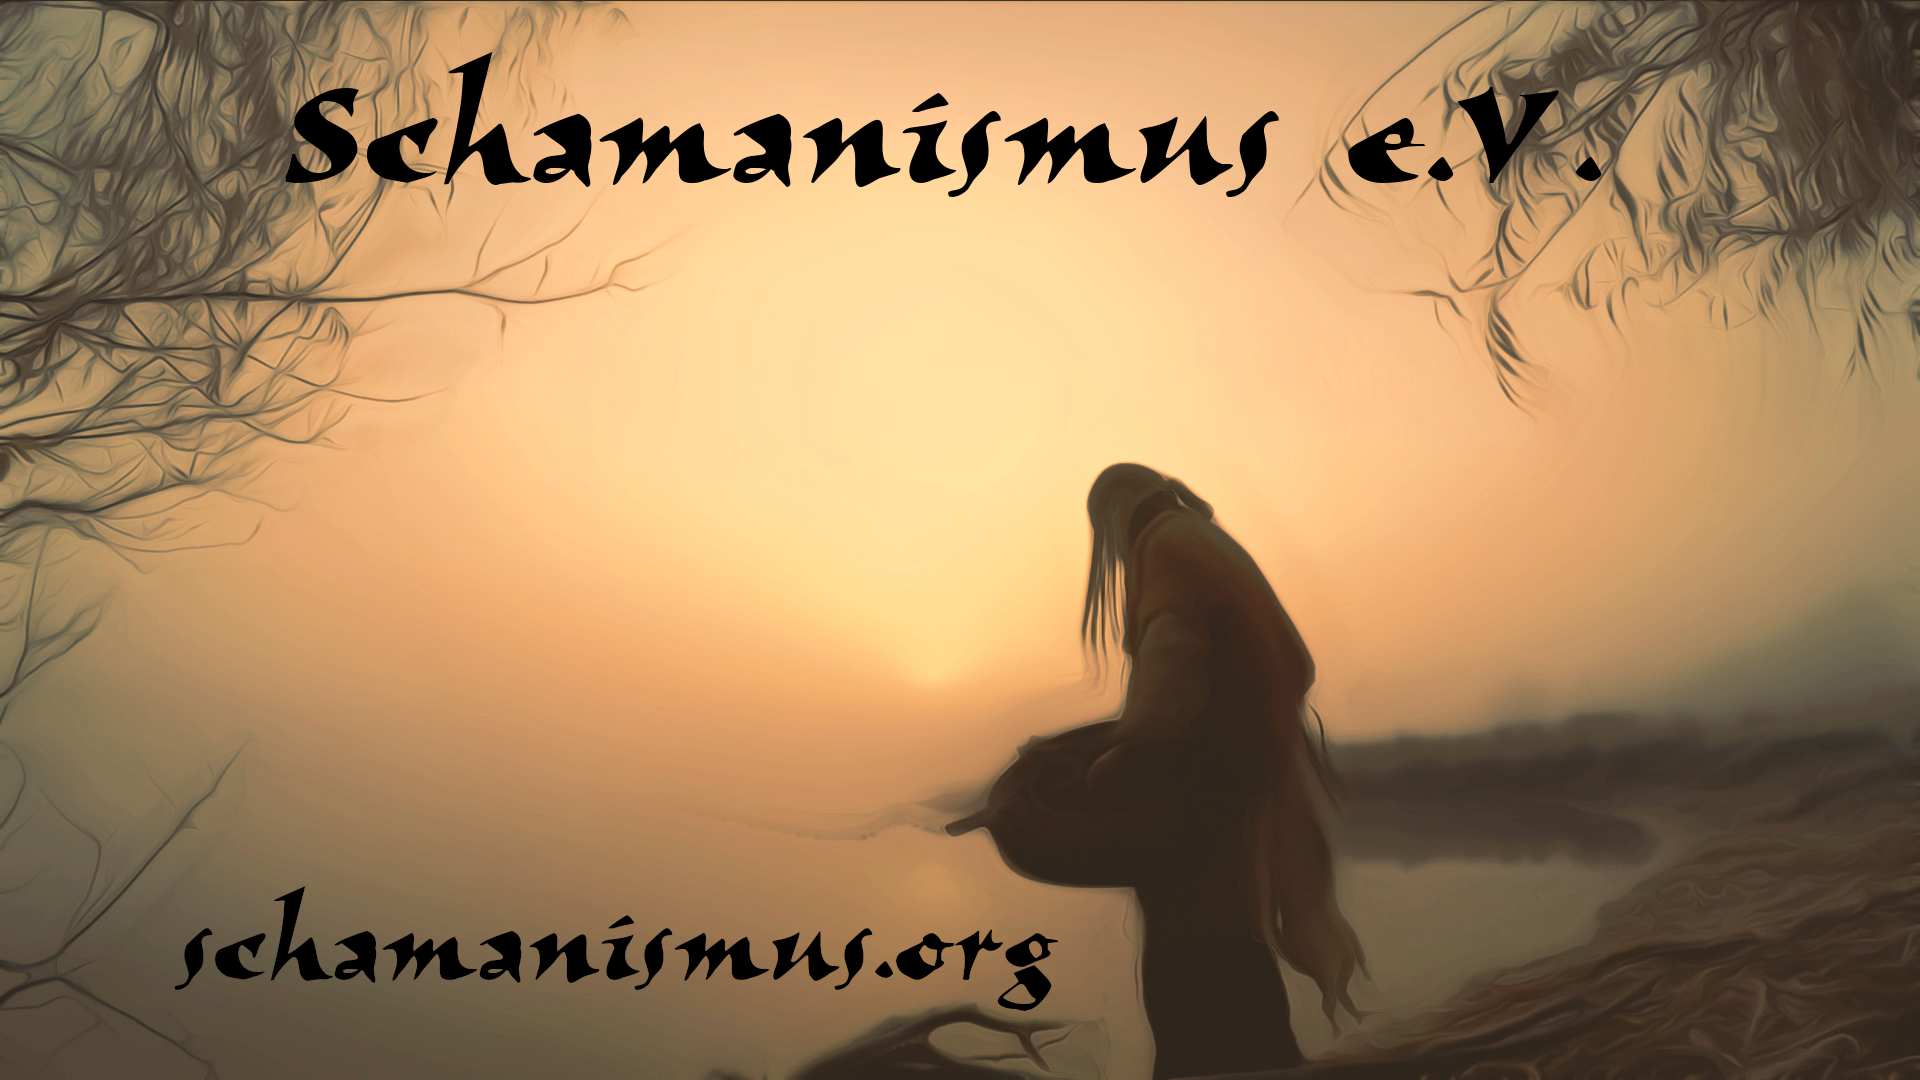 Schamanismus.Org